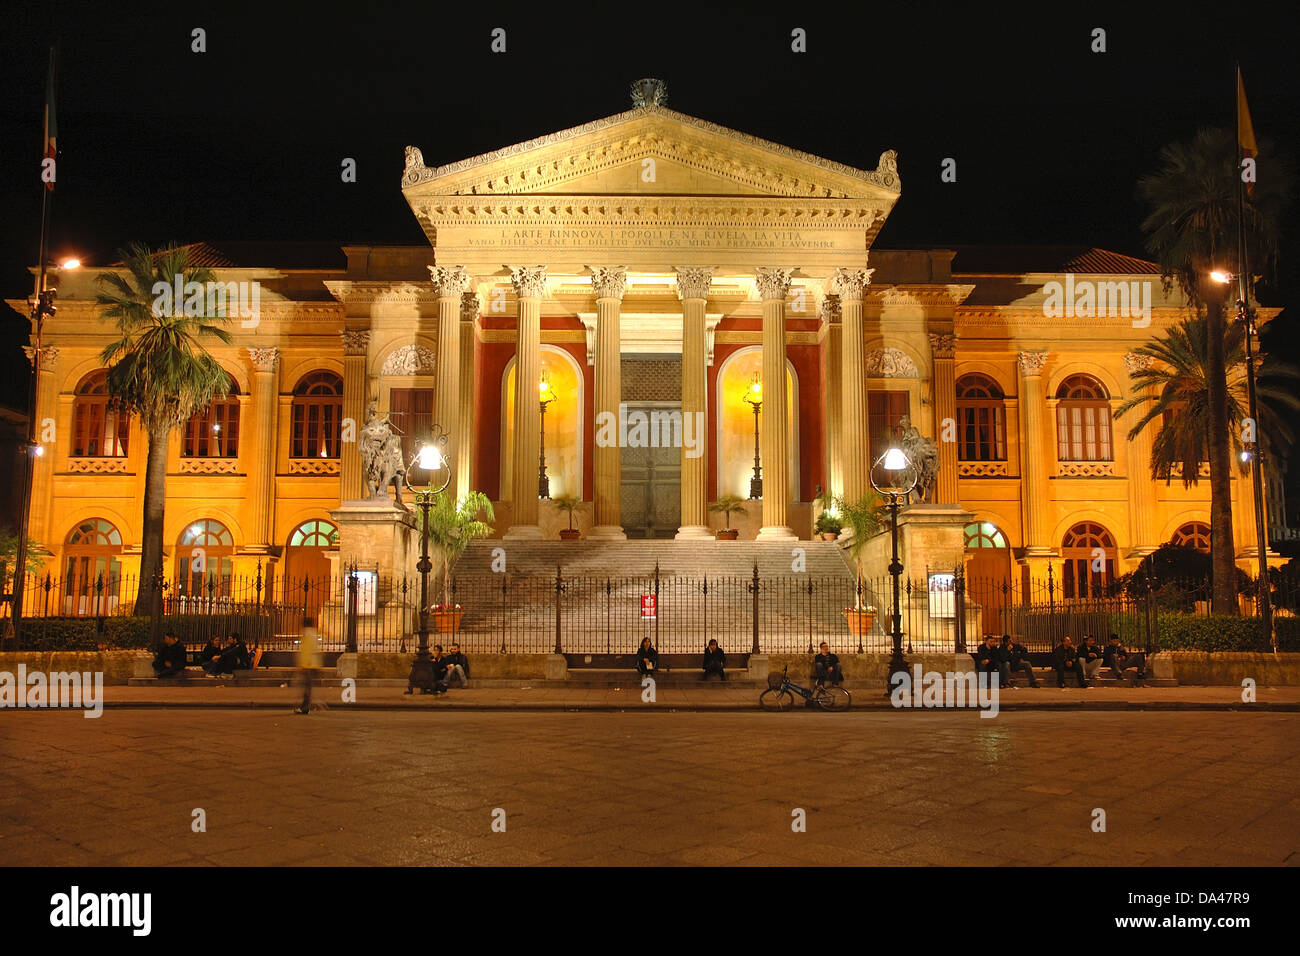 Teatro Massimo, l'opera house à Palerme - Italie Banque D'Images